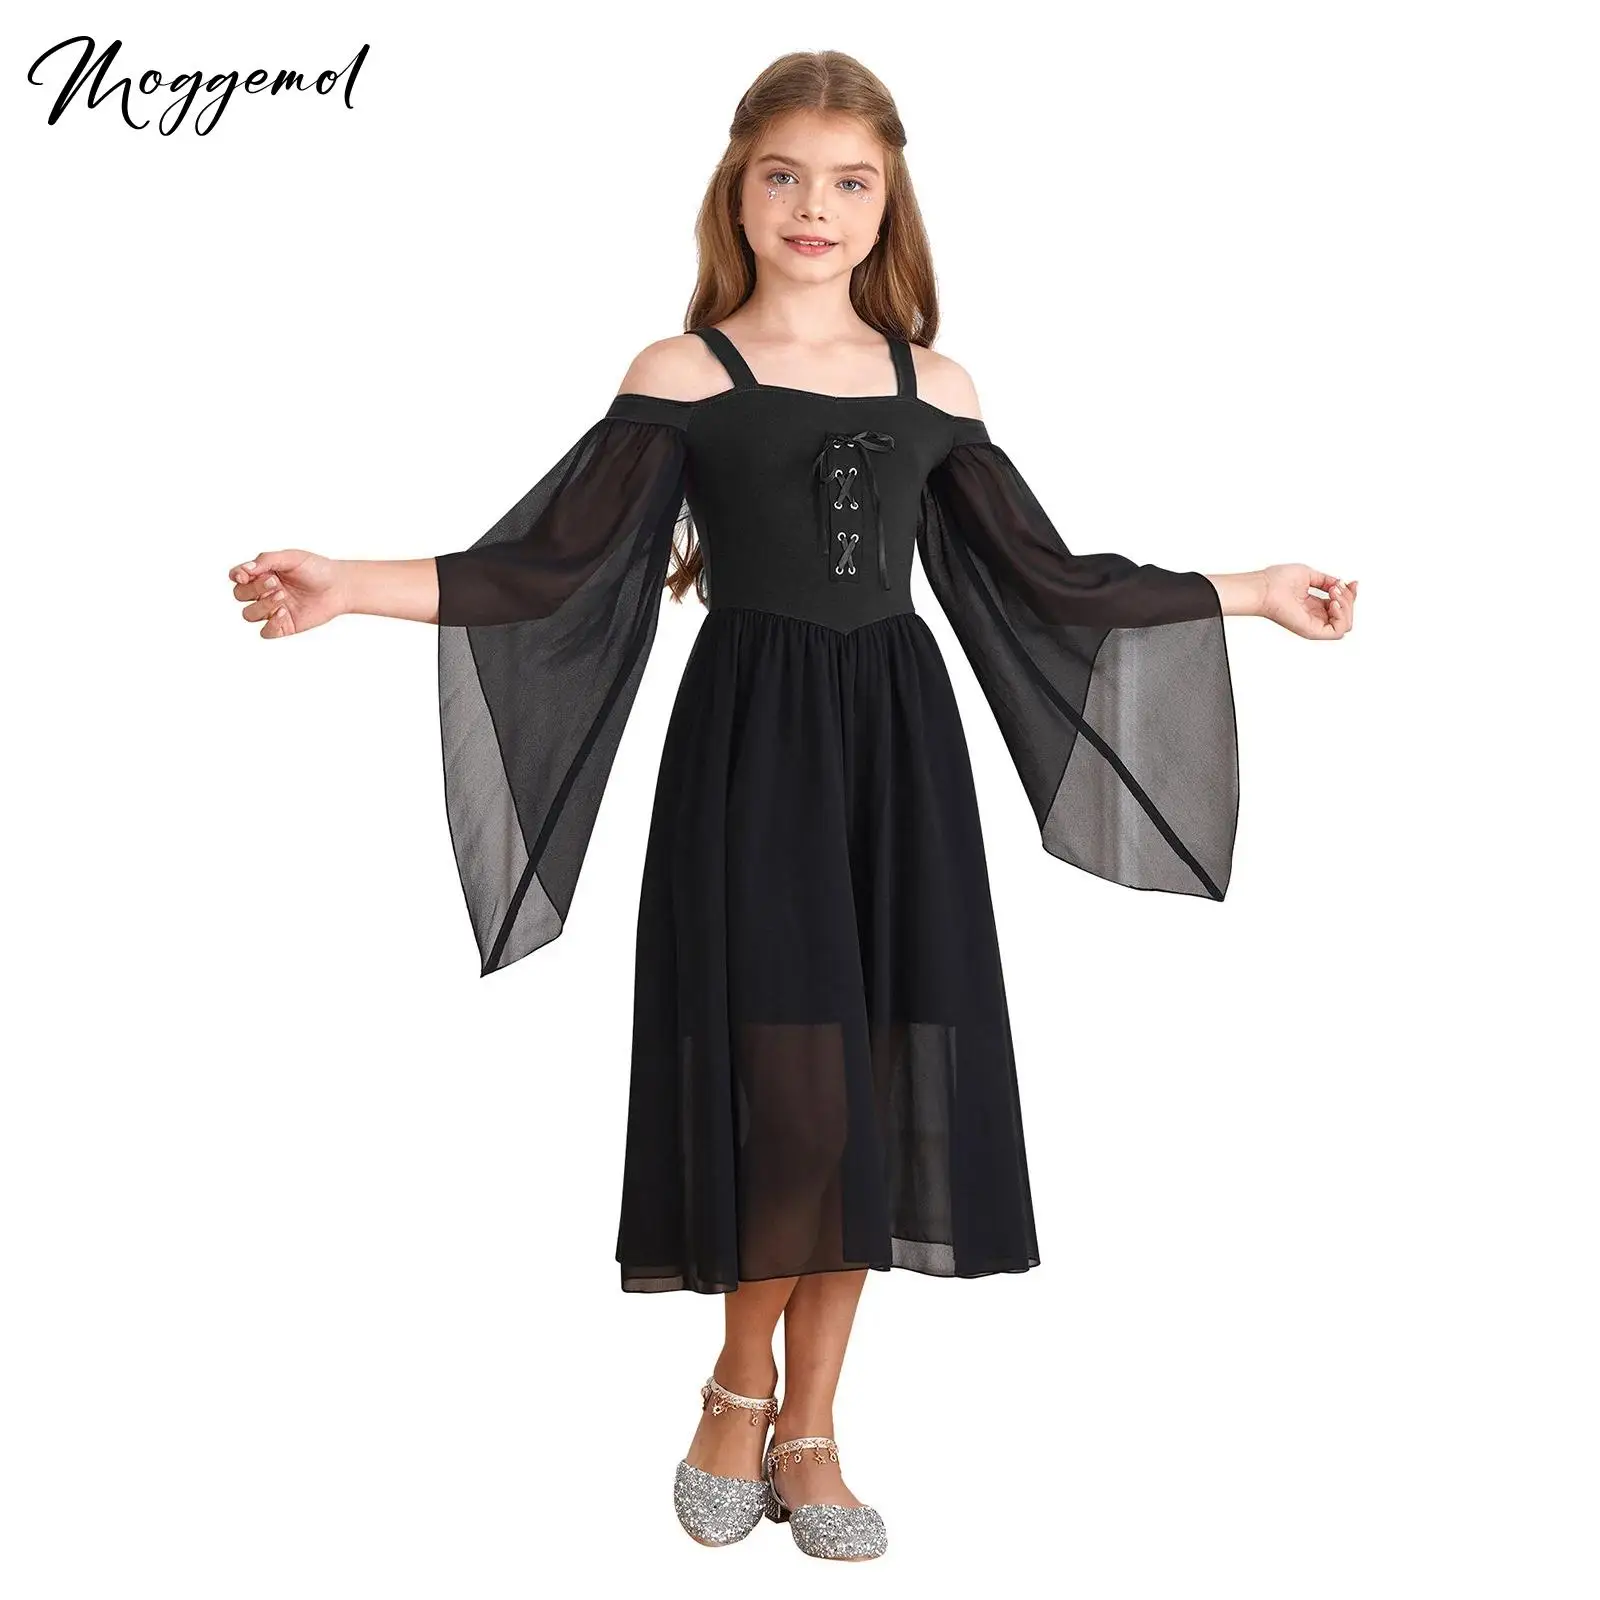 

Детский костюм вампира на Хэллоуин для девочек, платье невесты в средневековом стиле, готическое платье эпохи Возрождения, карнавальное праздничное вечернее платье, платье для выпускного вечера